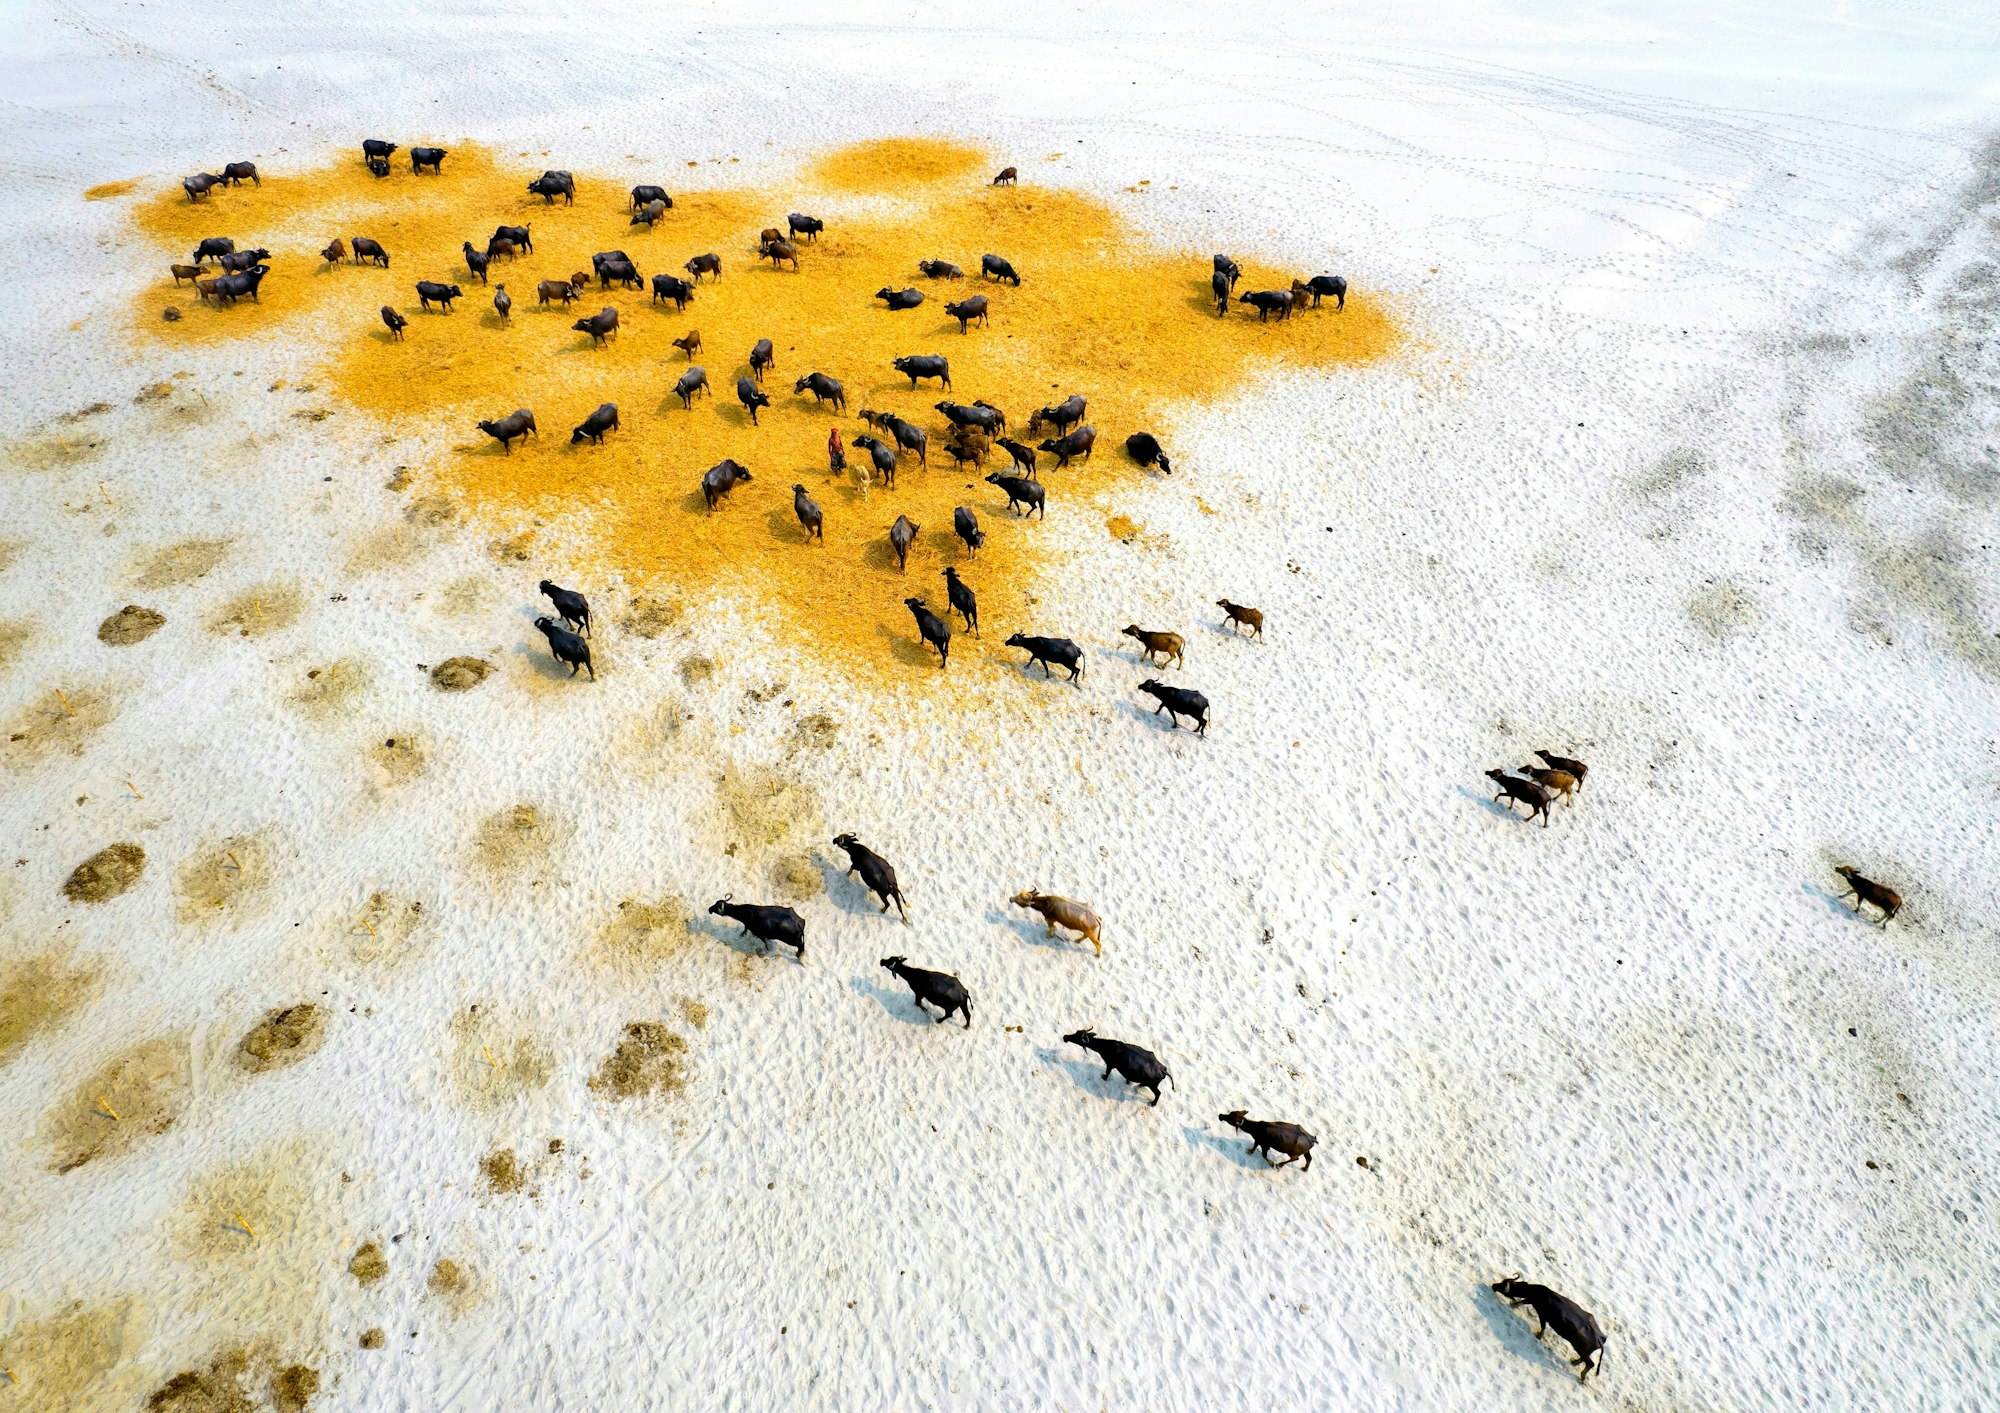 Büffel suchen während einer Dürre in Bangladesch auf ausgedörrtem Grasland nach Nahrung.